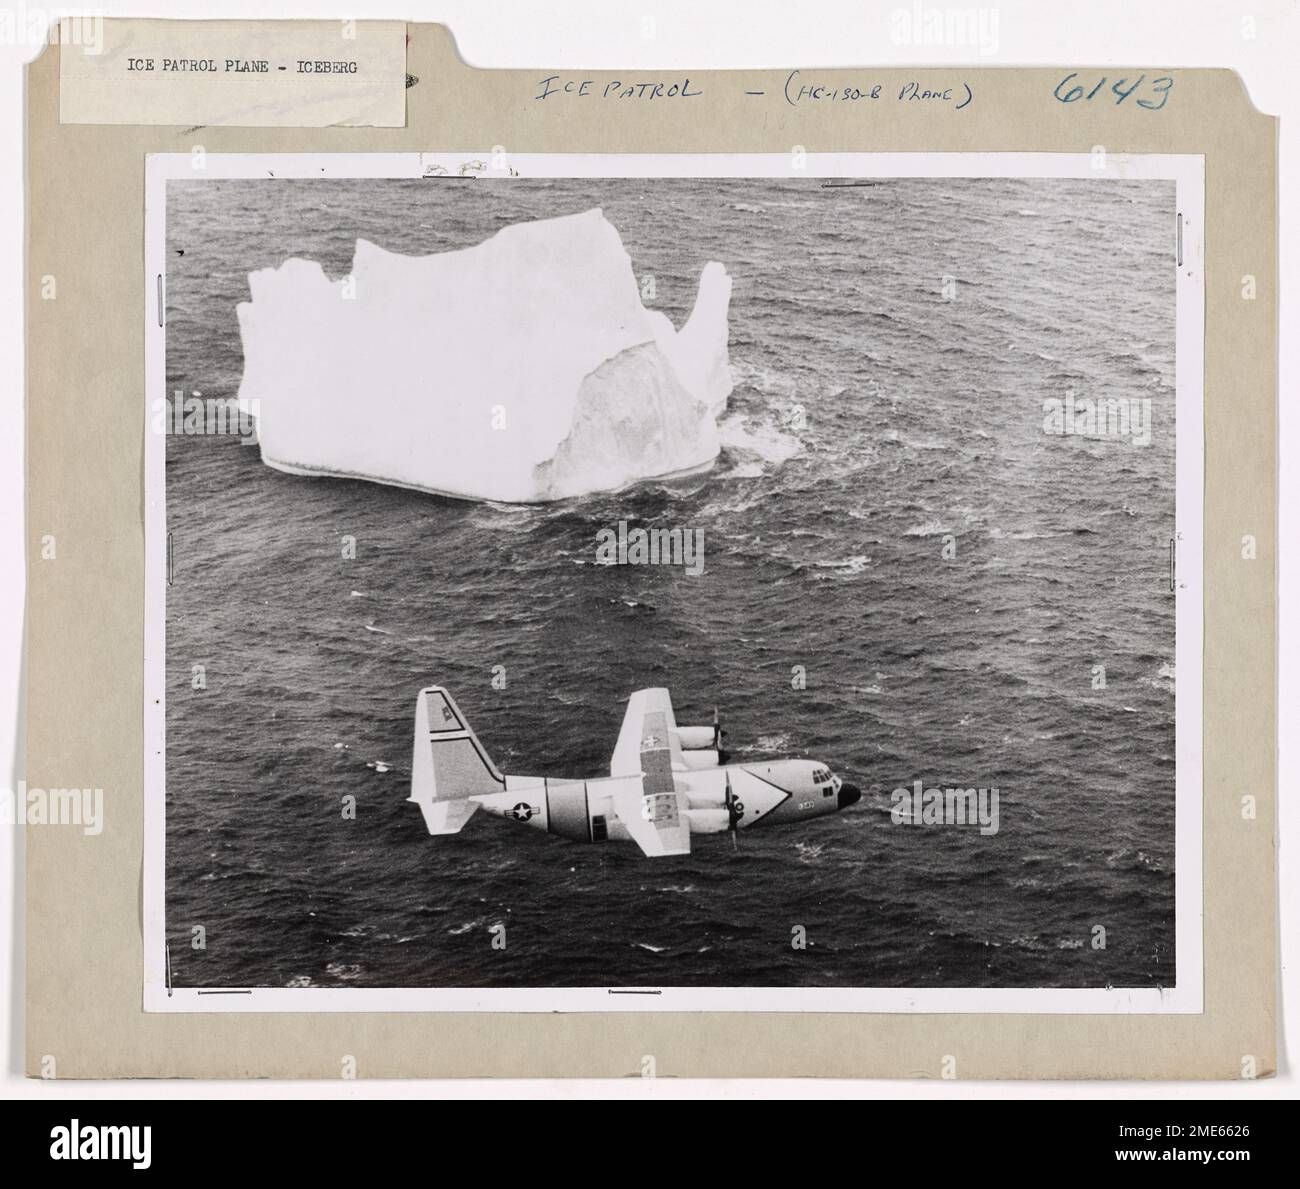 Surveillance des glaces plans de vues massive Iceberg. A ÉTATS-UNIS L'avion de patrouille sur glace Hercules HC-130-B de la Garde côtière d'Argentia, à Terre-Neuve, suit un iceberg massif observé le long des Grands bancs au large de Terre-Neuve à travers les puissantes jumelles d'un observateur assis à une fenêtre latérale de l'avion. L'observateur, un officier de la garde côtière spécialement formé à la détermination de la taille, de la direction et de la vitesse des bergs, est entré dans le calcul de l'observation et de la distance pris par Radar dans son journal. Après le vol, son entrée est contrôlée par rapport à la position de Loran obtenue par le navigateur pendant le vol. À partir de ces données, le locati Banque D'Images